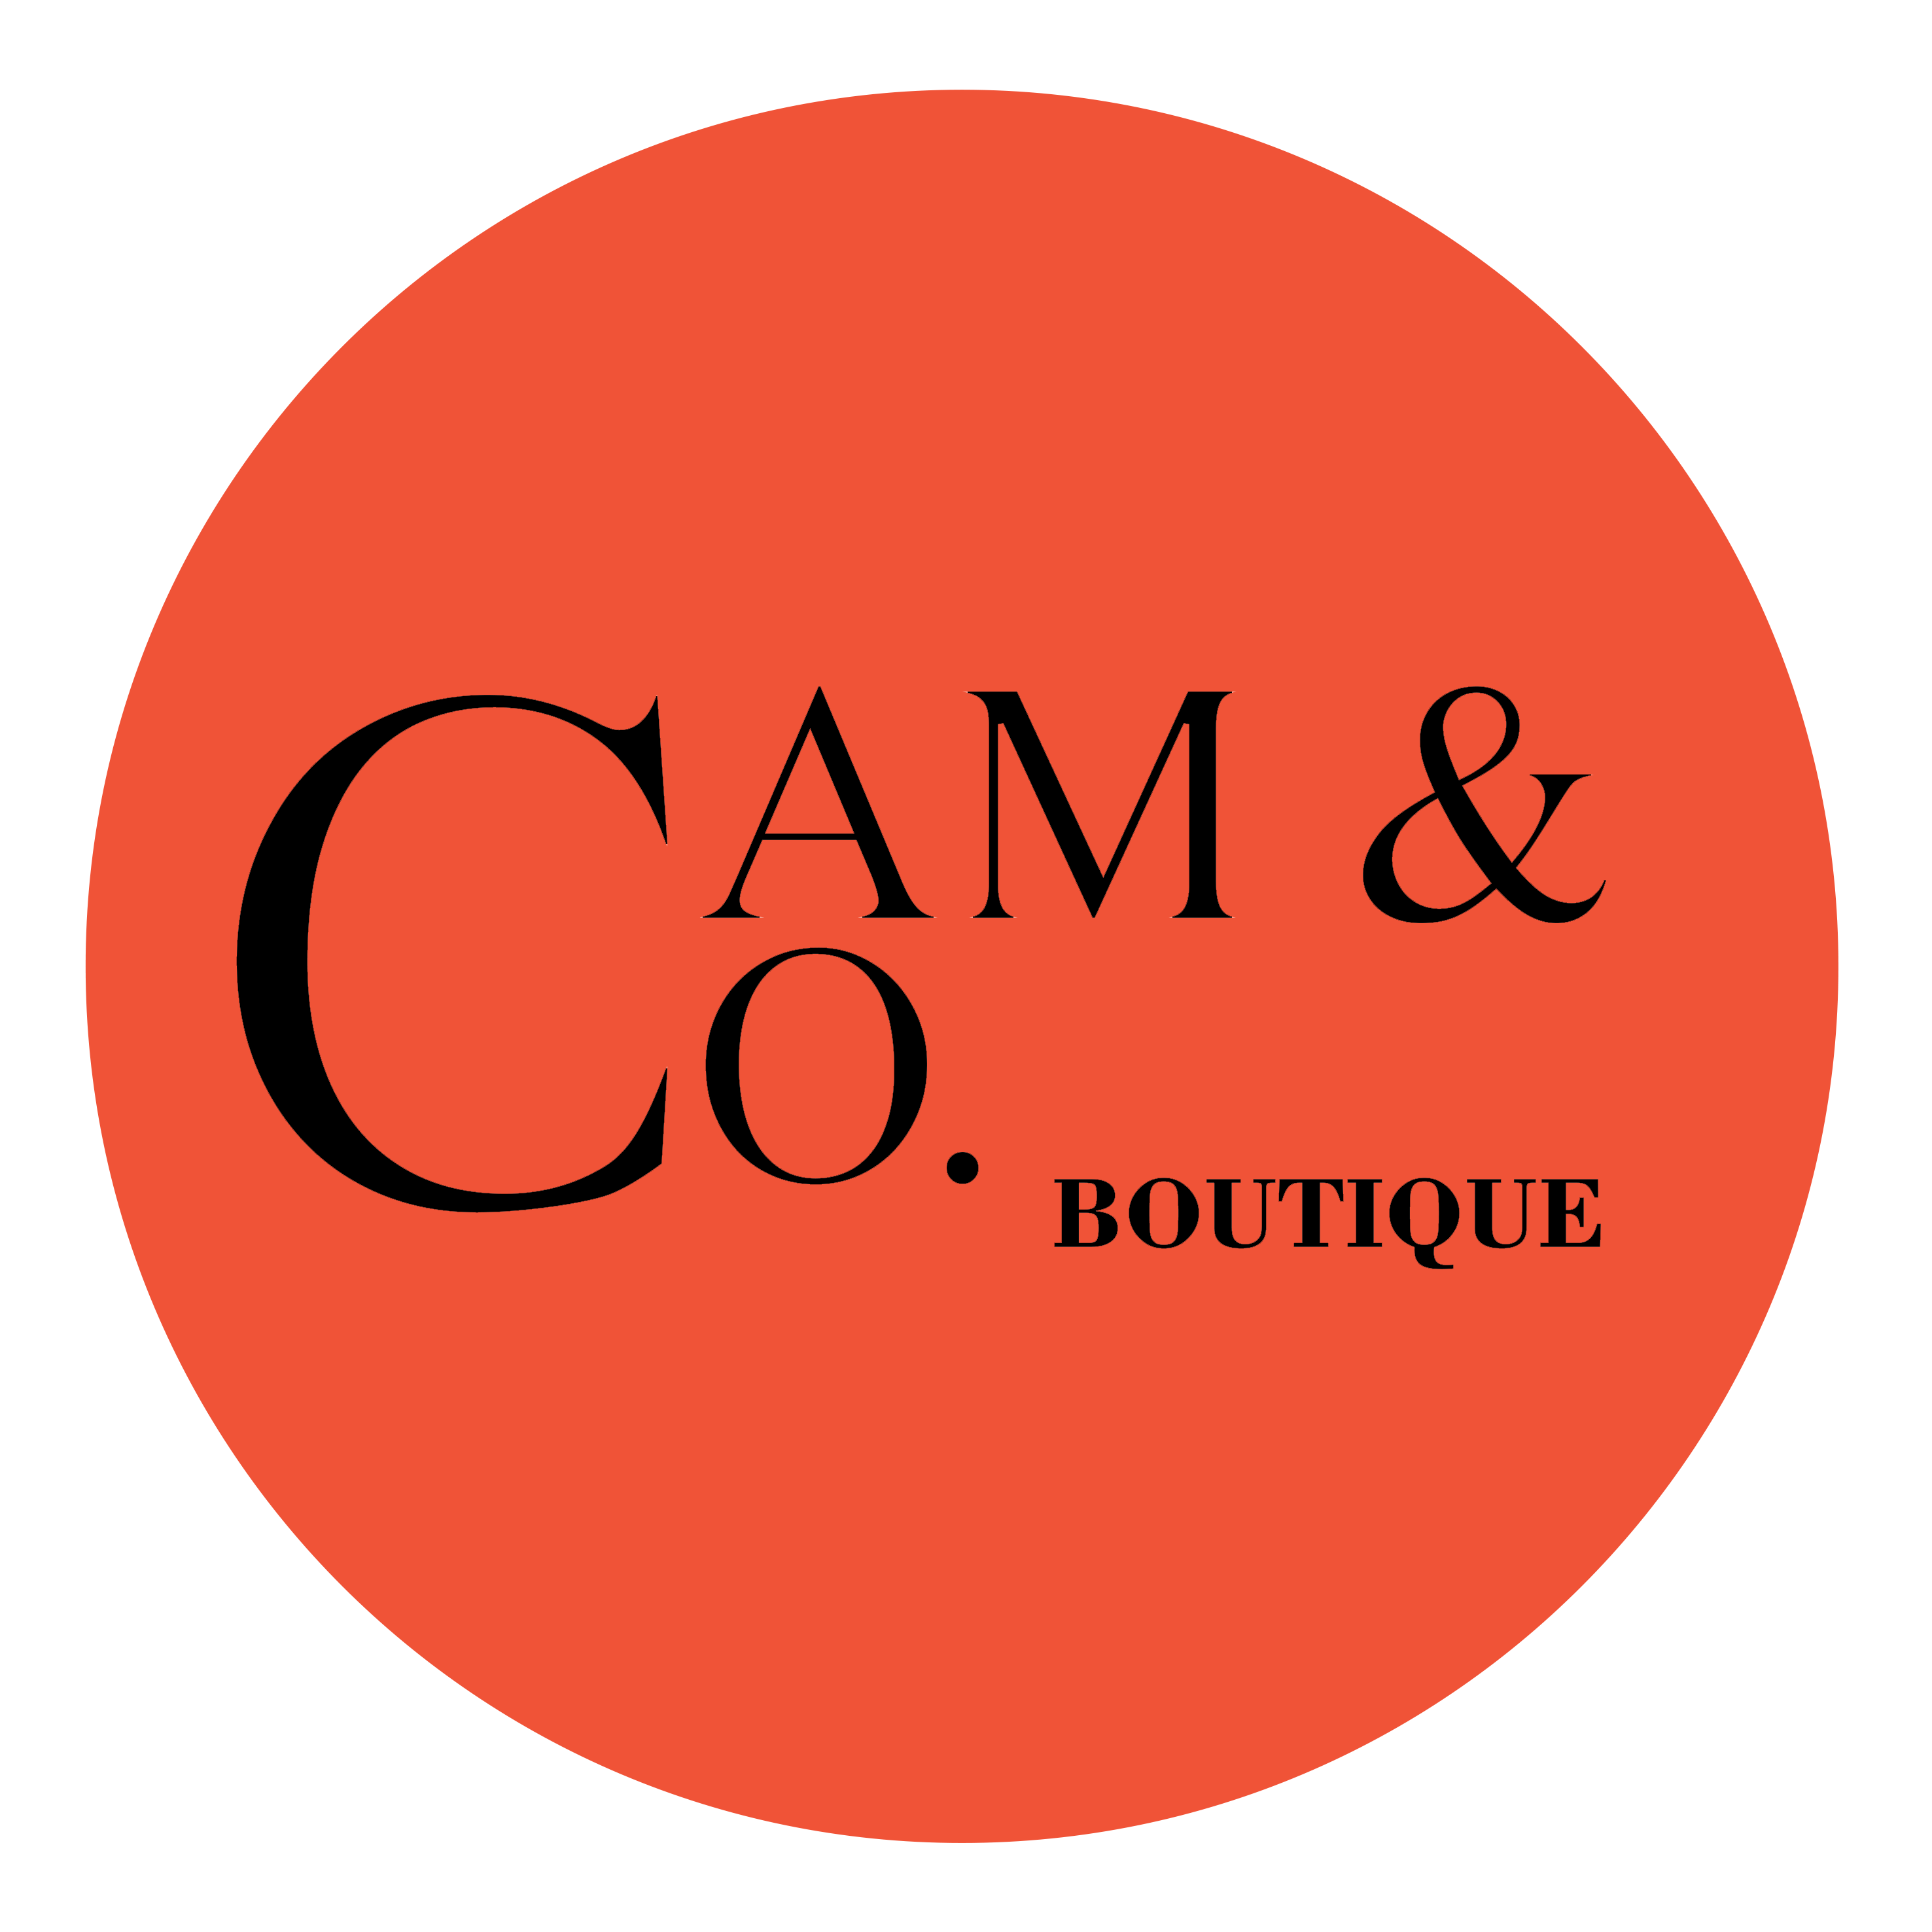 Cam&Co Boutique